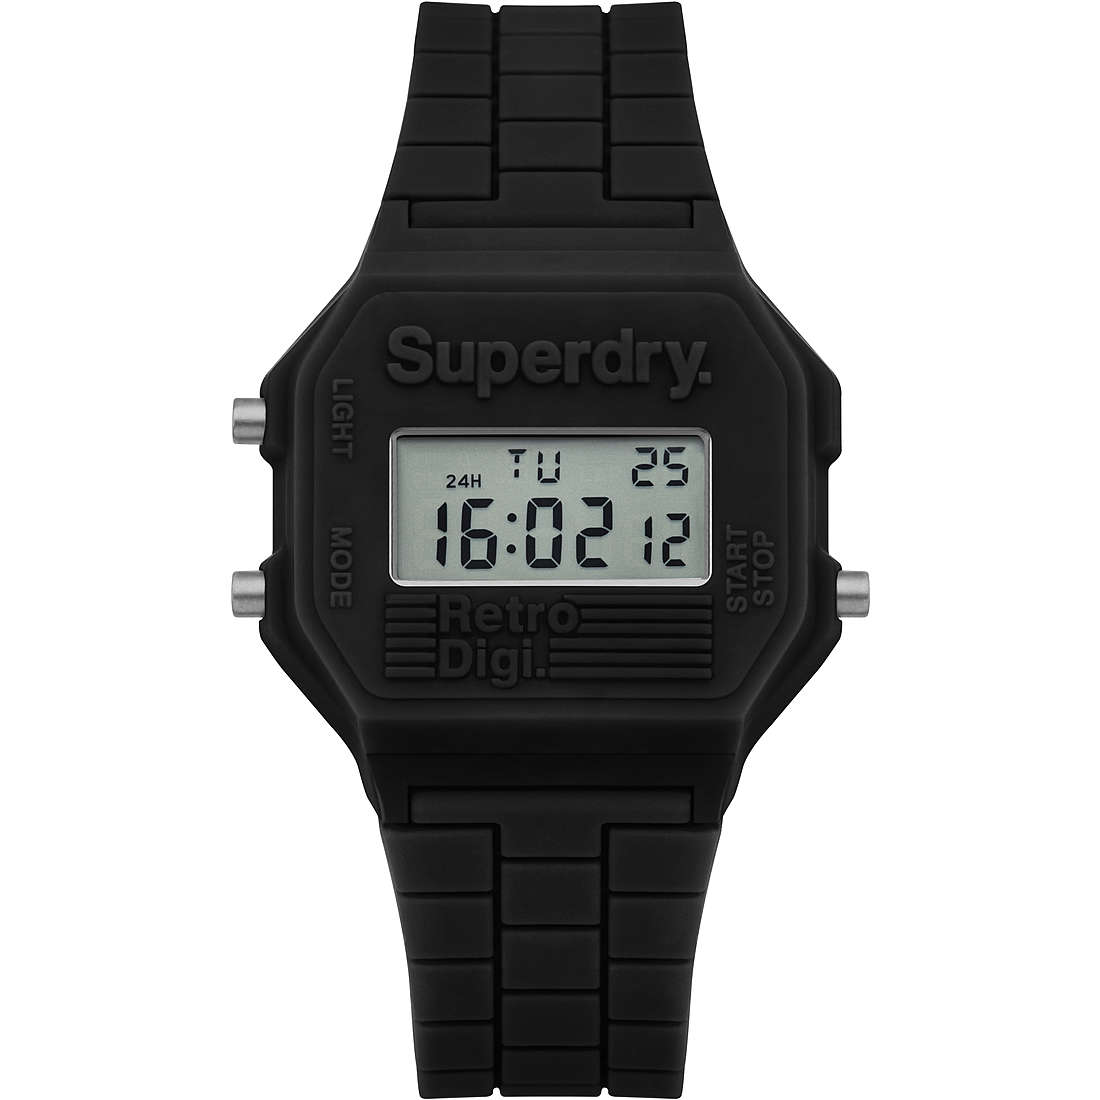 Uhr digital frau Superdry Retro Digi SYL201B